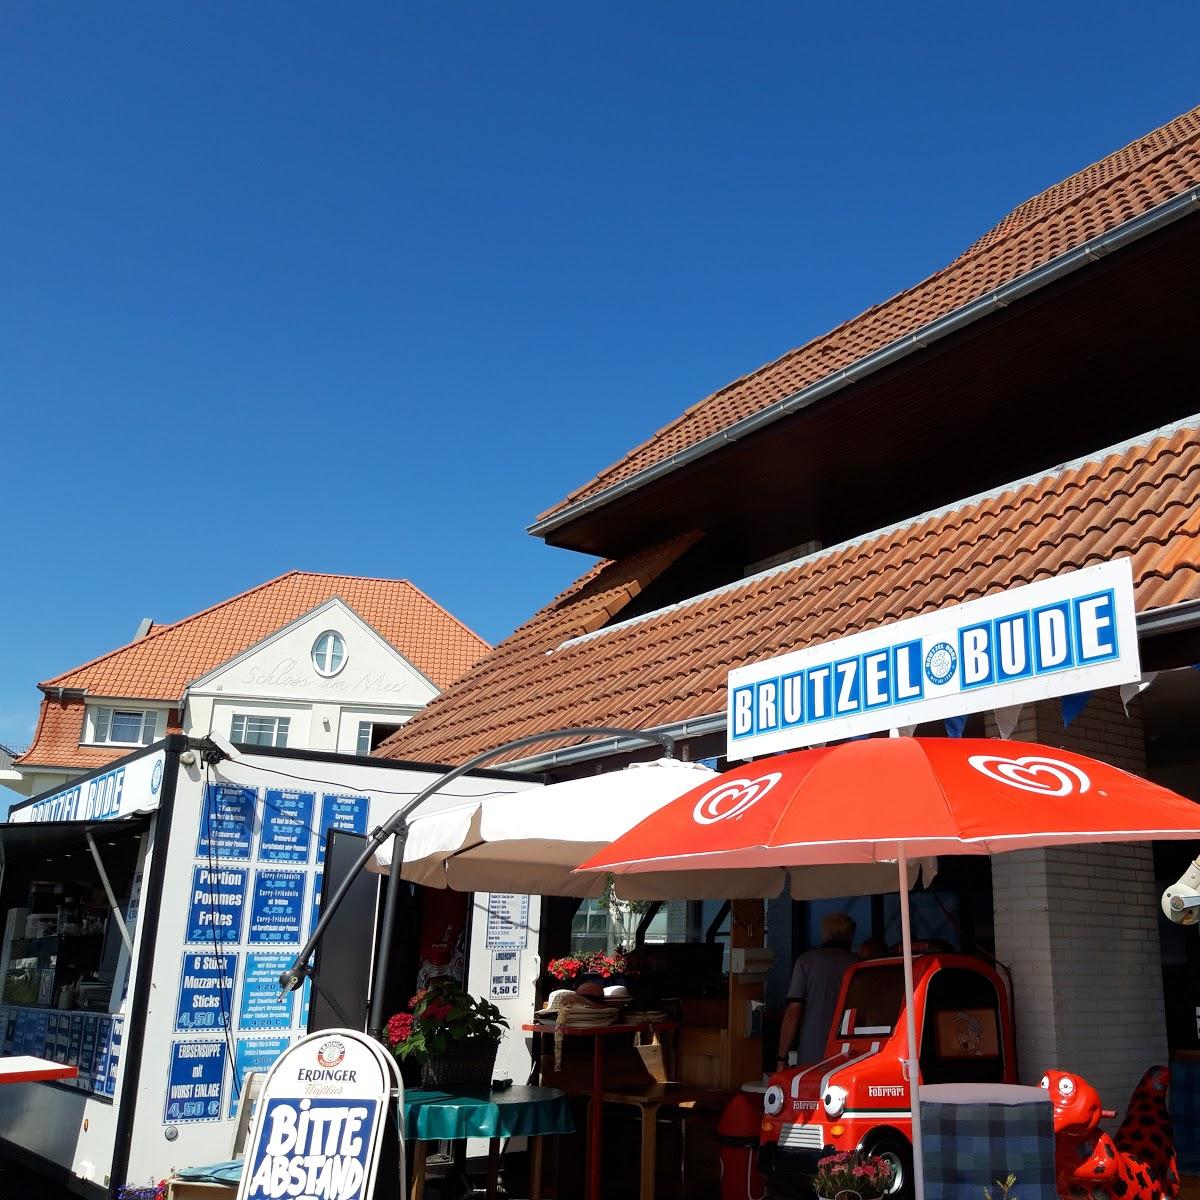 Restaurant "Brutzel Bude" in Wyk auf Föhr